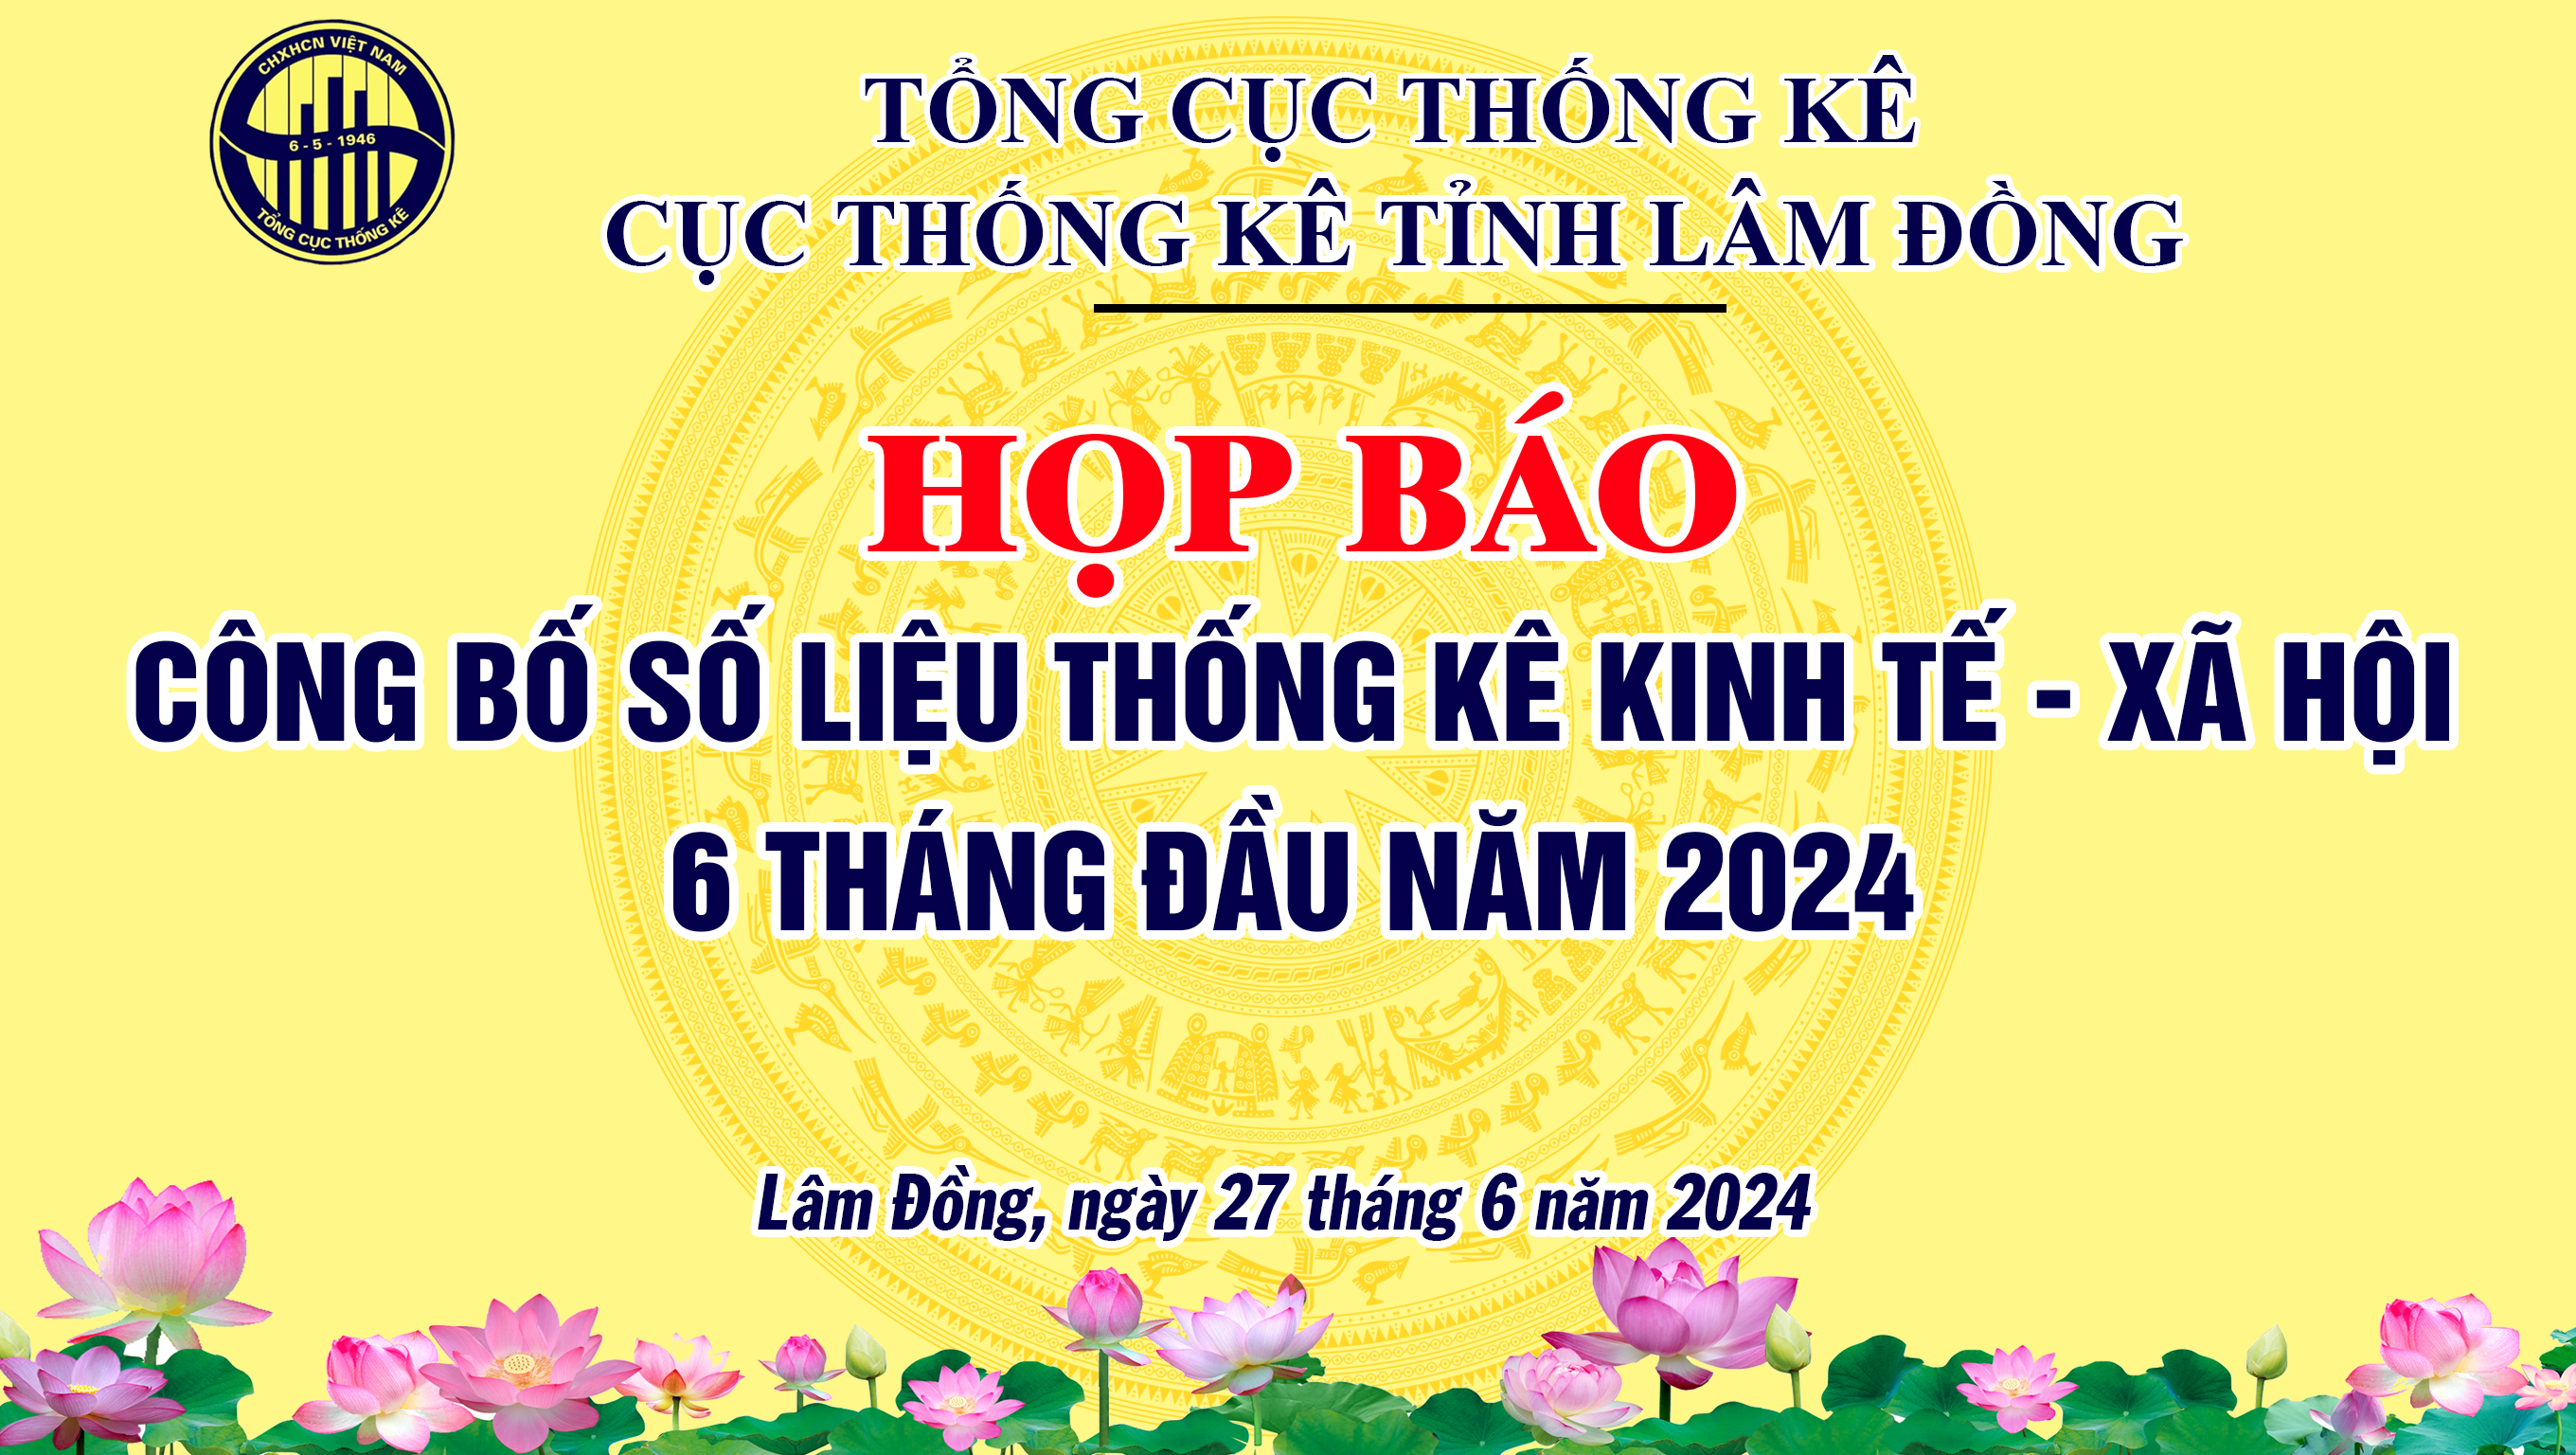 Họp báo công bố số liệu thống kê kinh tế - xã hội 6 tháng đầu năm 2024 tỉnh Lâm Đồng